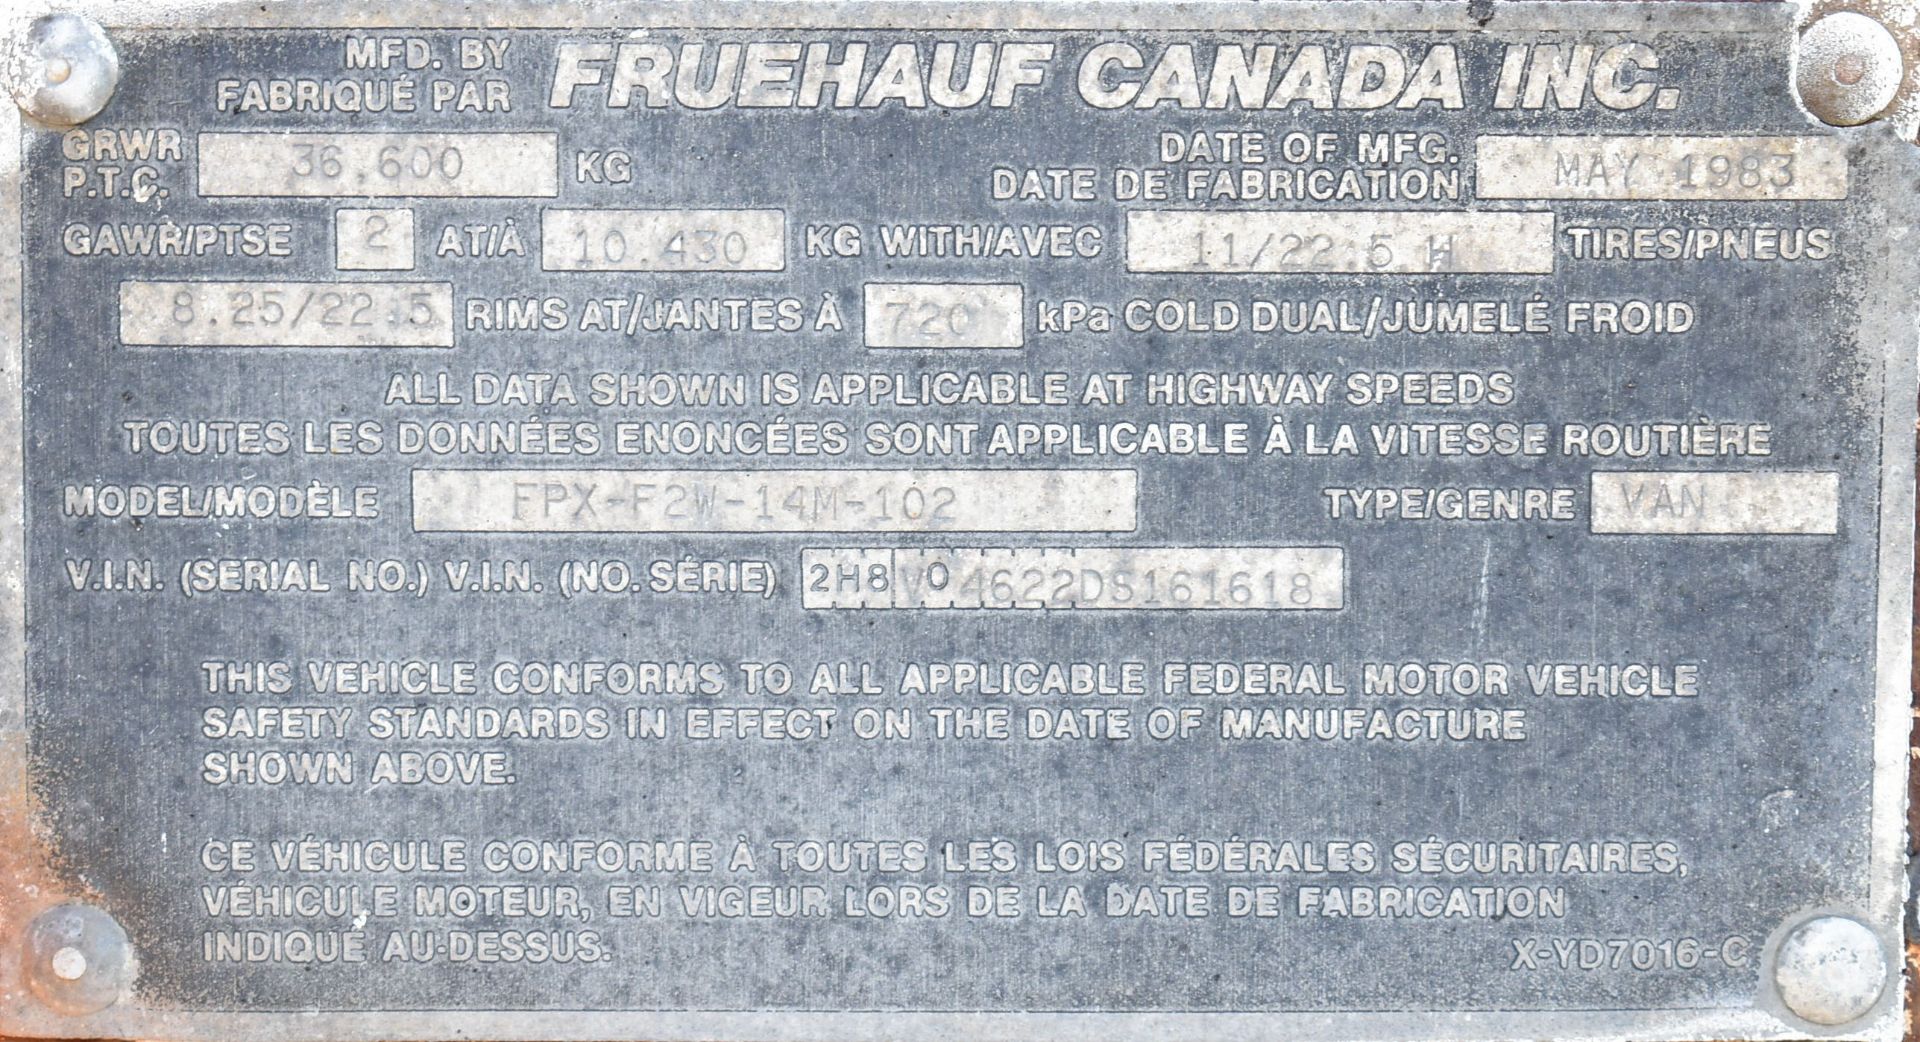 FRUEHAUF FPX-F2W-14M-102 46' STORAGE VAN TRAILER, VIN 2H8V04622DS161618 (NO REGISTRATION - DELAYED - Image 4 of 7